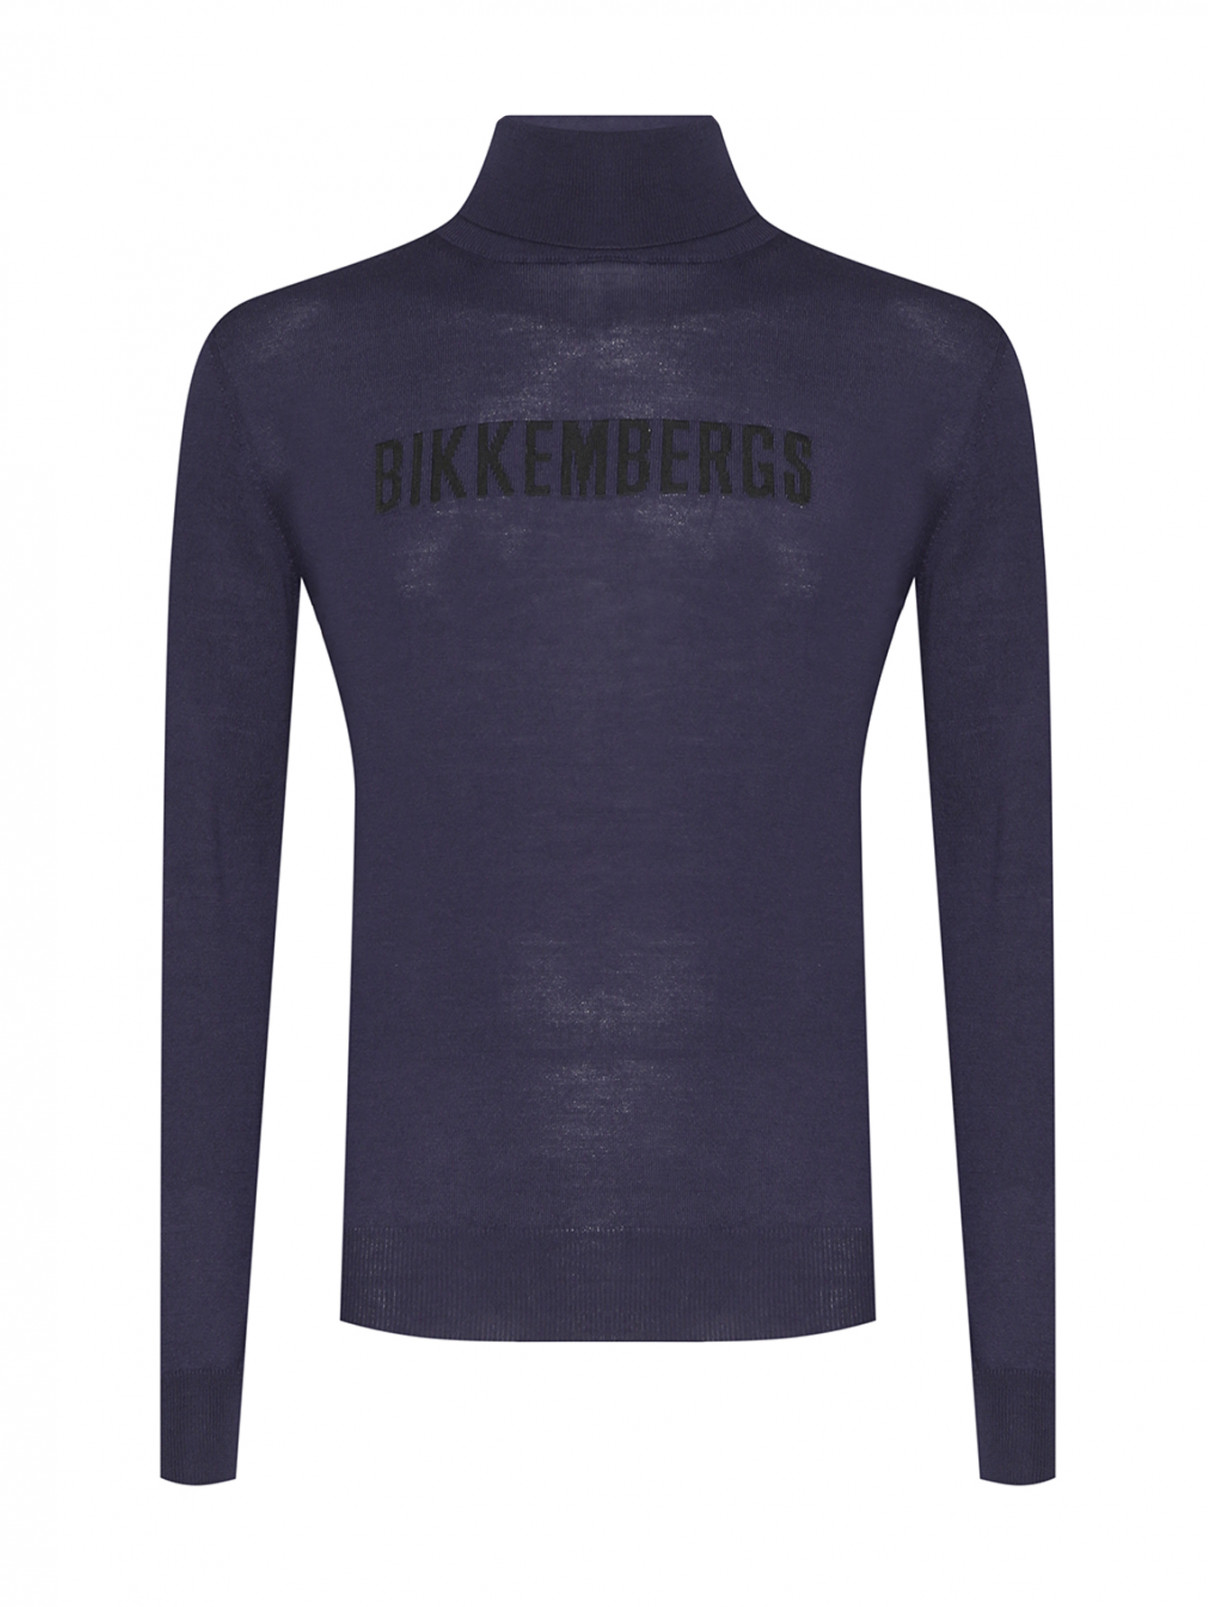 Водолазка с логотипом Bikkembergs  –  Общий вид  – Цвет:  Синий